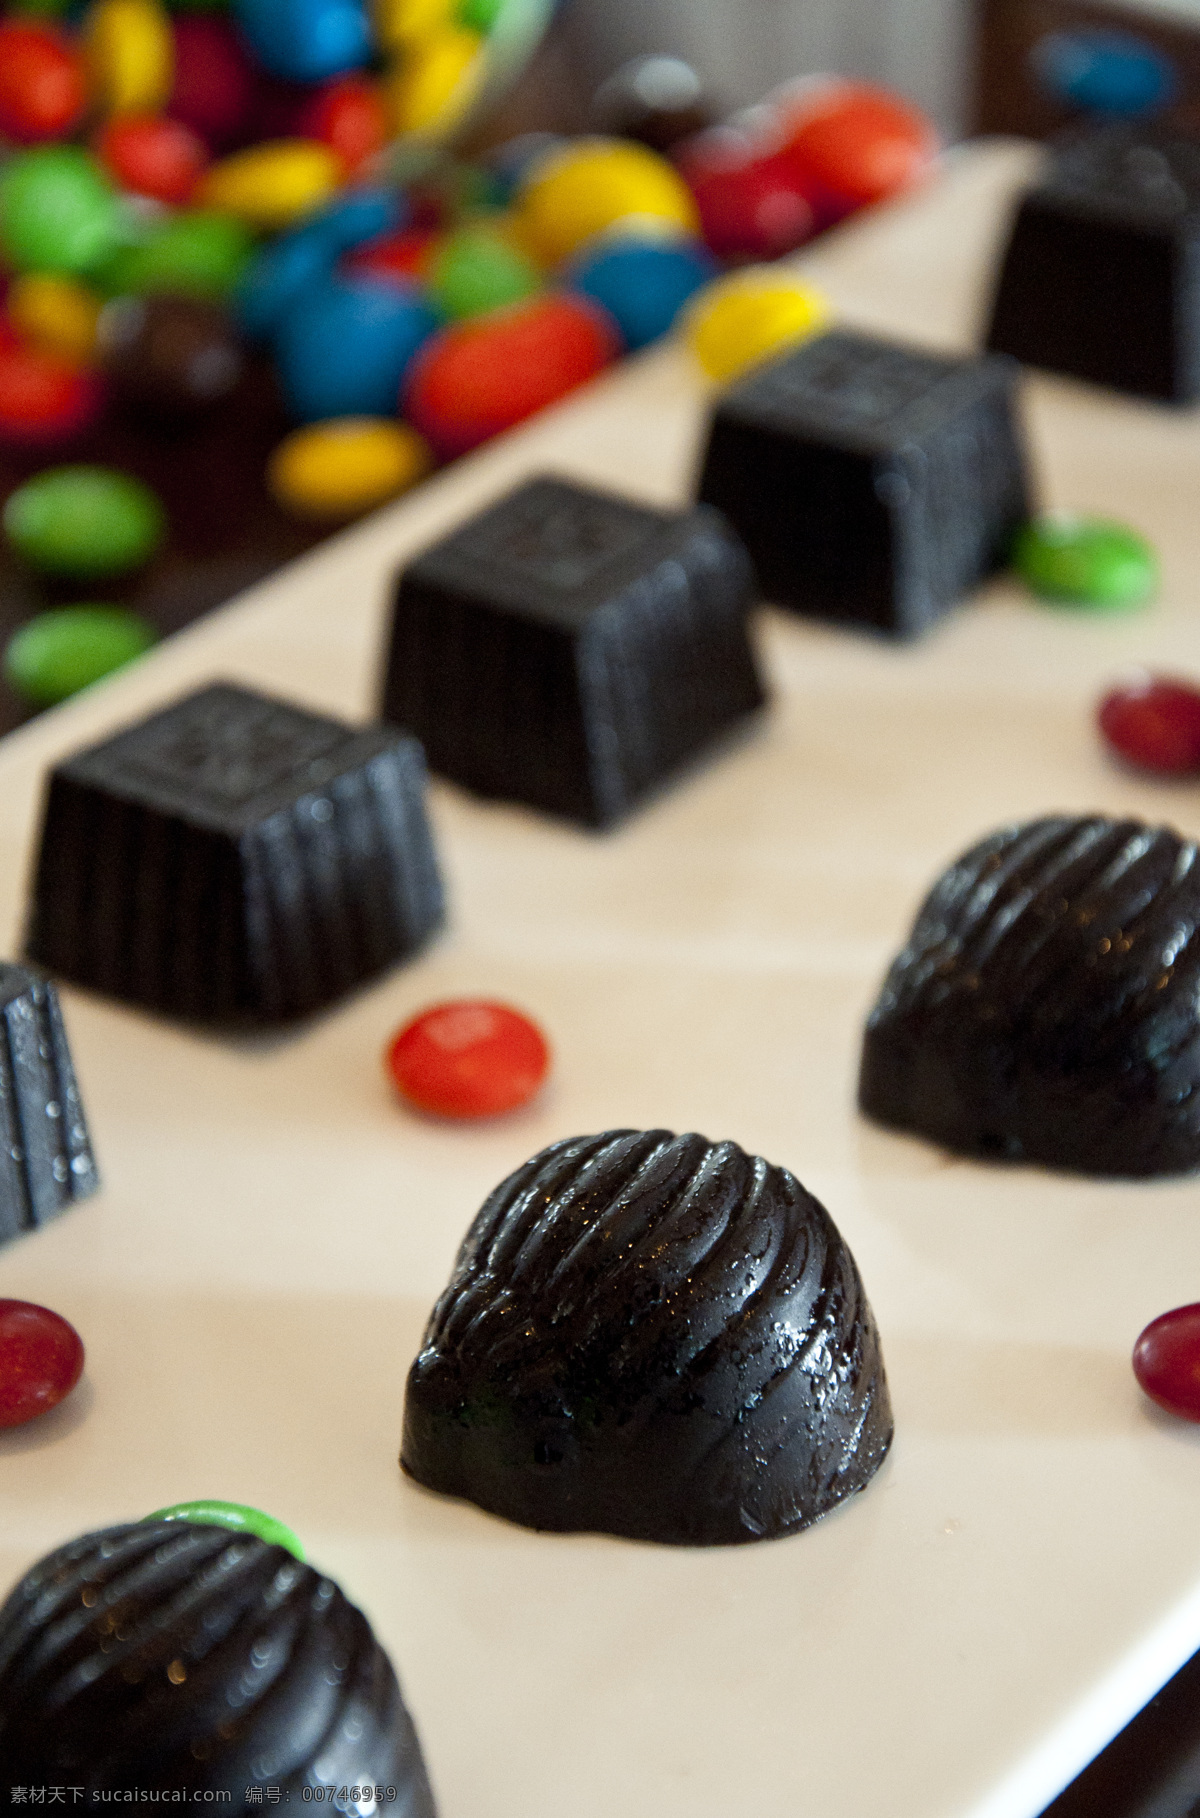 酒心巧克力 巧克力 水果巧克力 巧克力集合 零食 巧克力块 黑巧克力 巧克力糖 进口食品 进口零食 夹心巧克力 情人节 甜蜜 甜点 餐饮美食 西餐美食